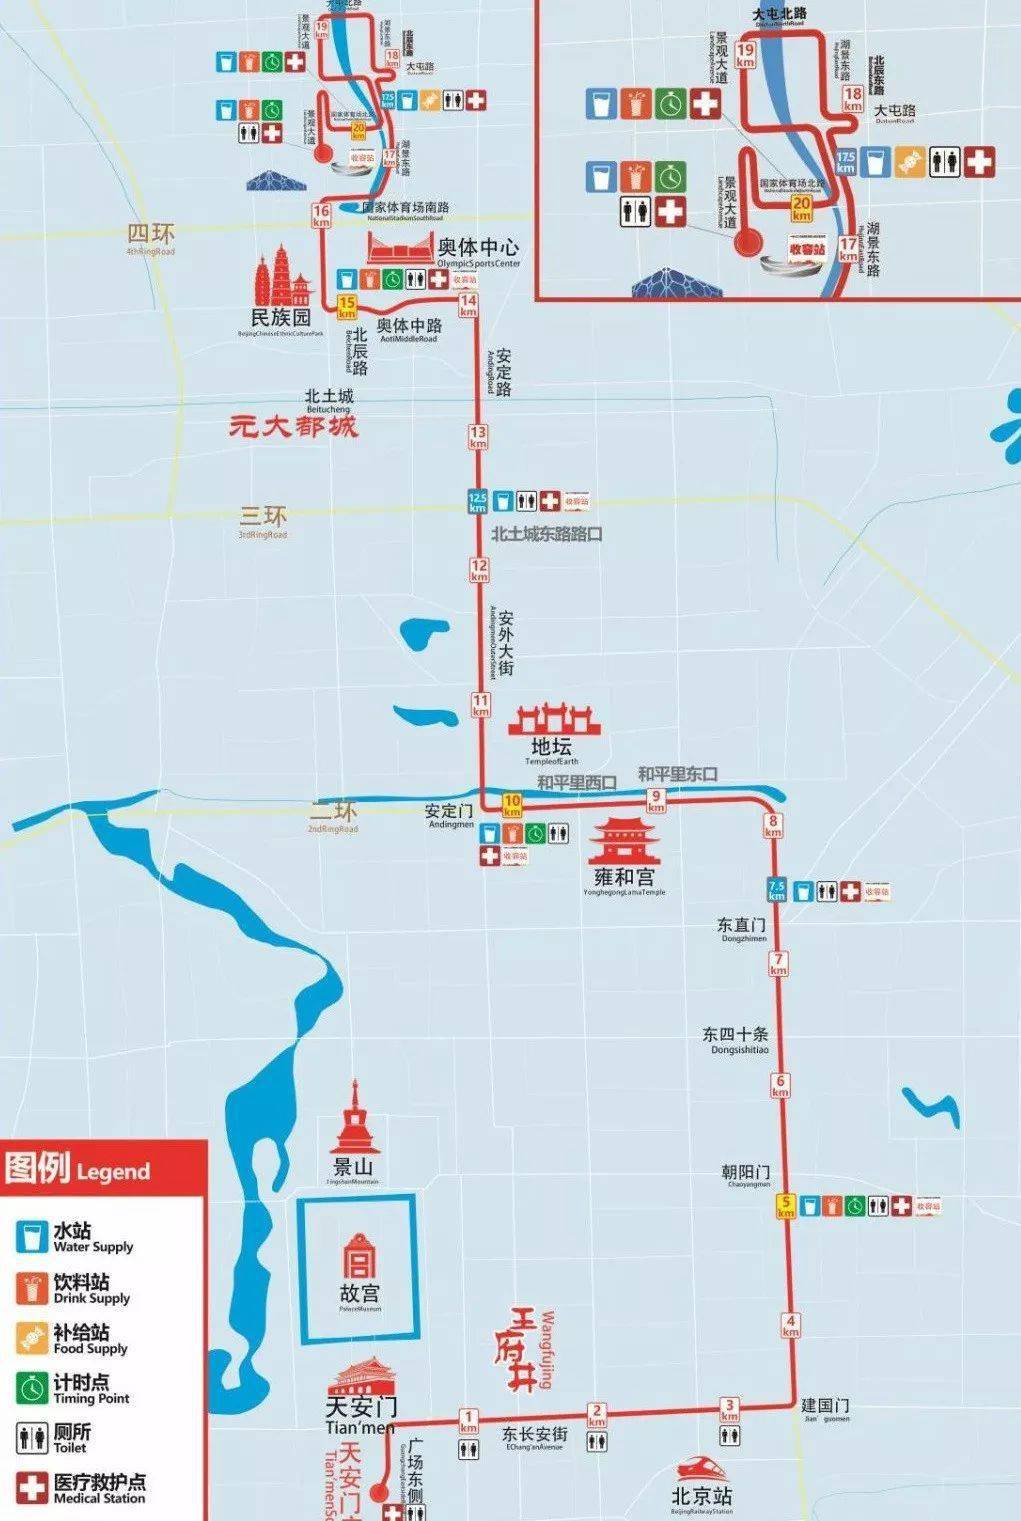 2021北京半程马拉松要来了?